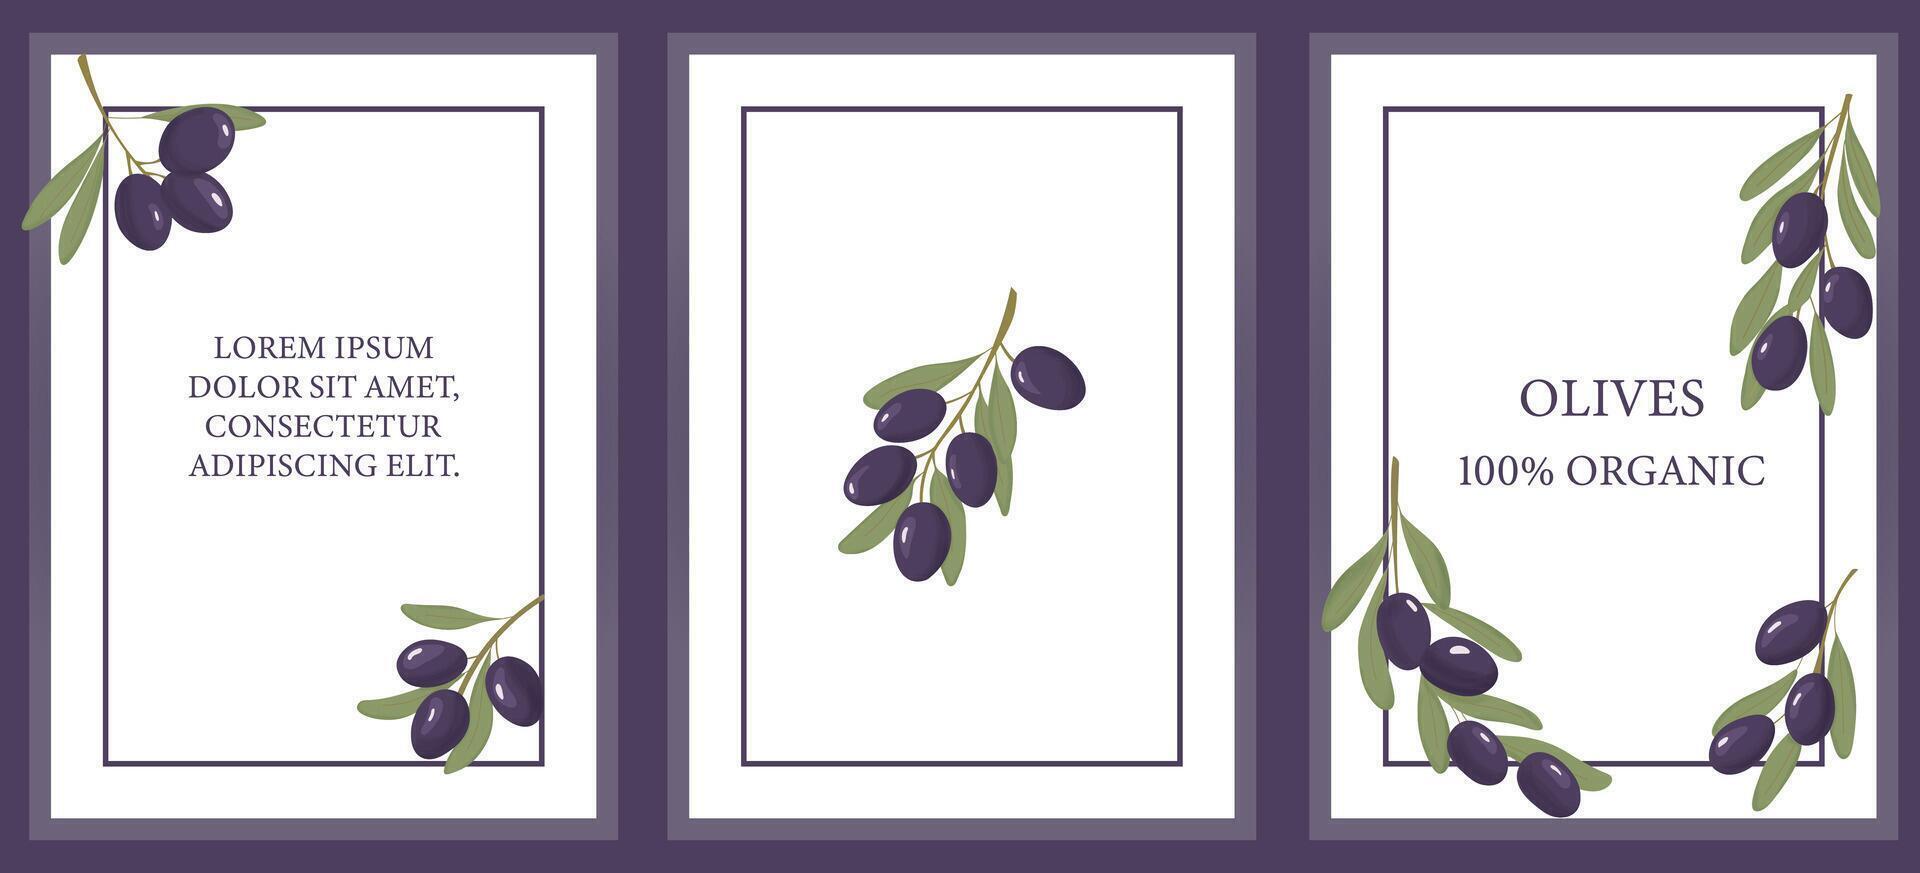 viola olive modello impostare. frutta etichette impostare. 3 etichette di viola olive Kalamata, con posto di testo. per Prodotto confezione. vettore illustrazione.